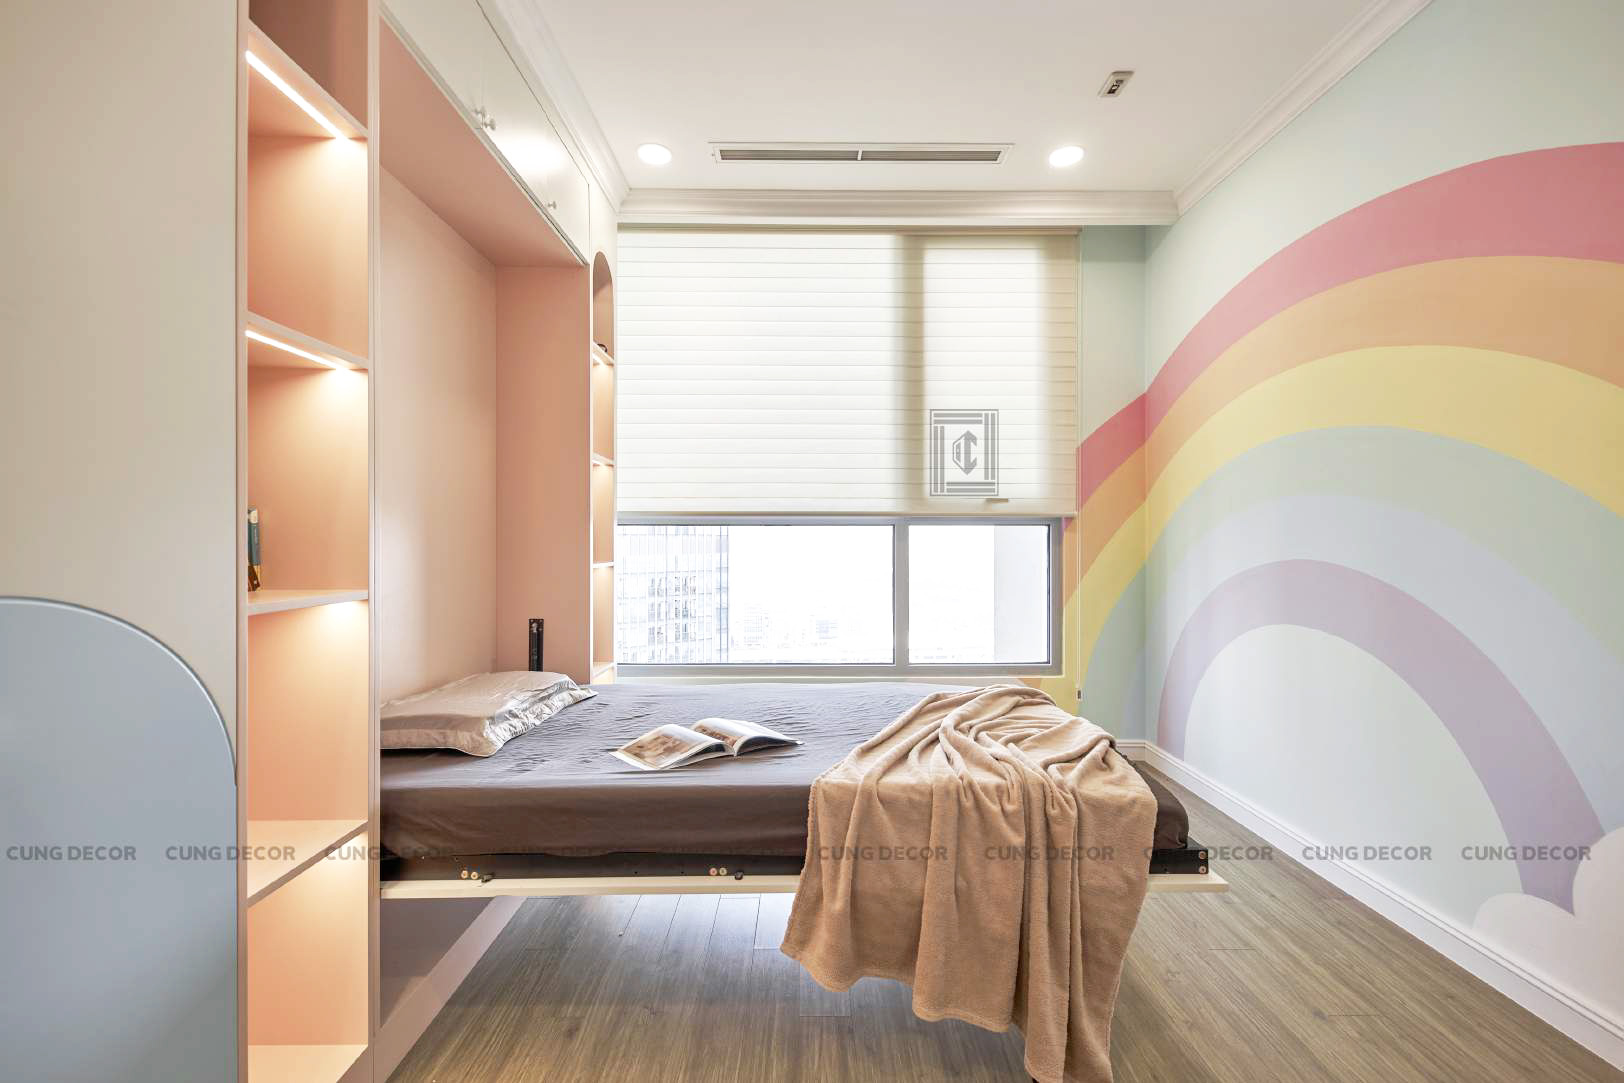 Hoàn thiện nội thất phòng cho bé Căn hộ Landmark 81 Vinhomes Central Park phong cách Tân cổ điển Neo Classic